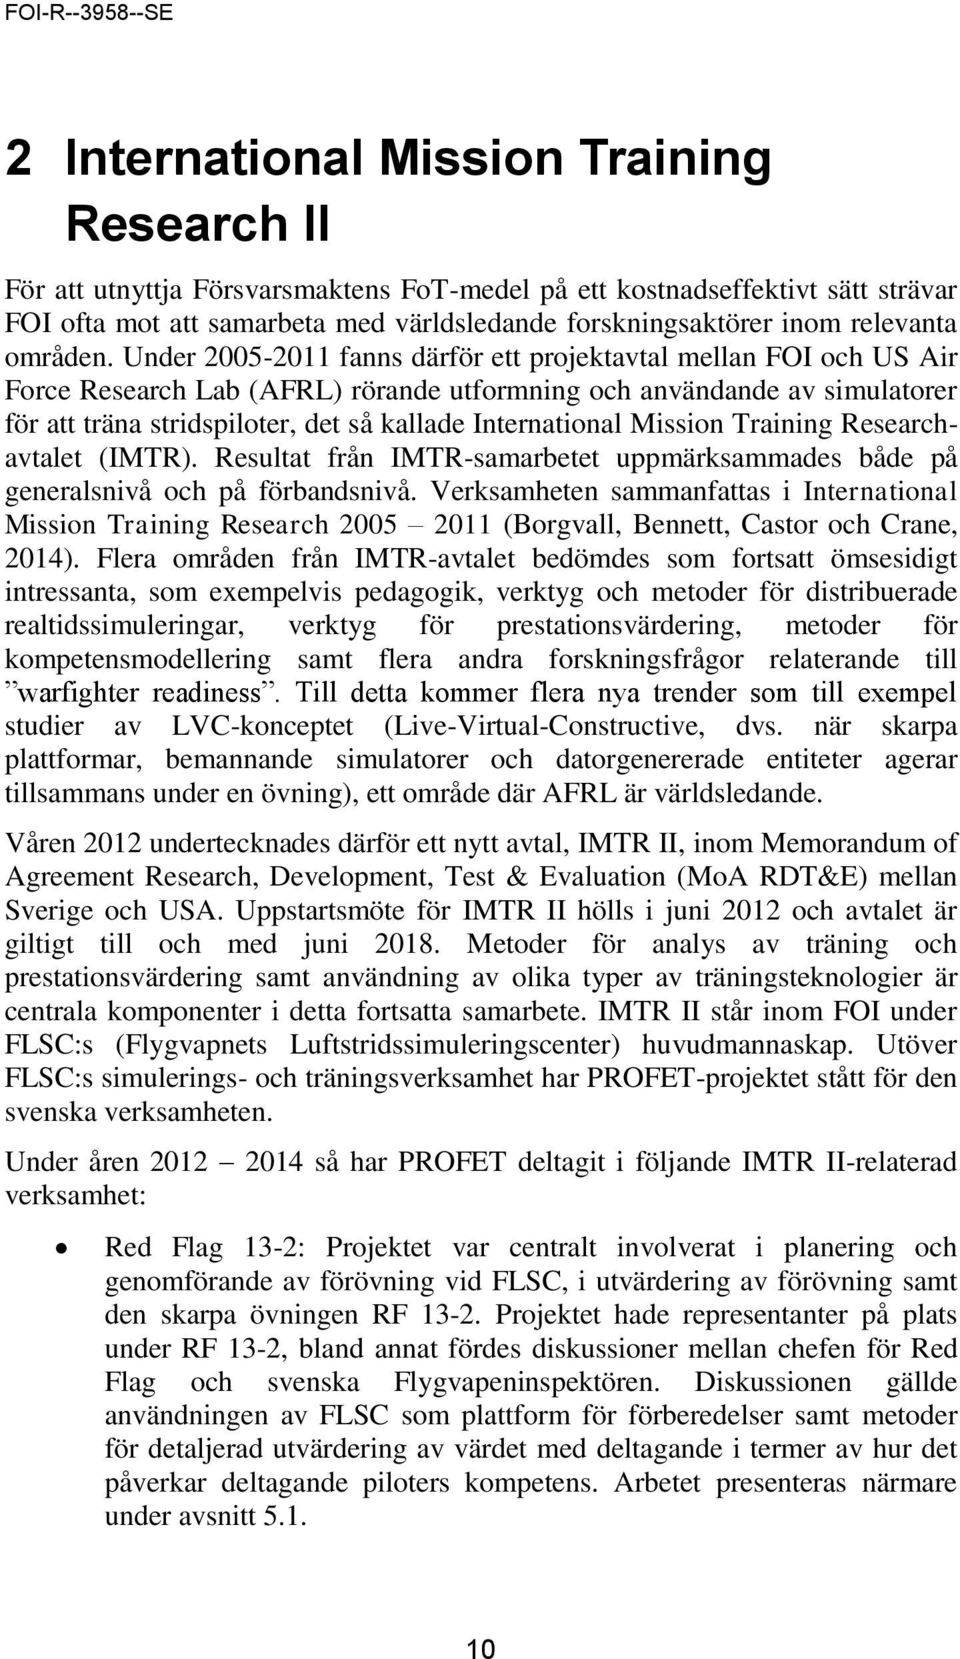 Under 2005-2011 fanns därför ett projektavtal mellan FOI och US Air Force Research Lab (AFRL) rörande utformning och användande av simulatorer för att träna stridspiloter, det så kallade